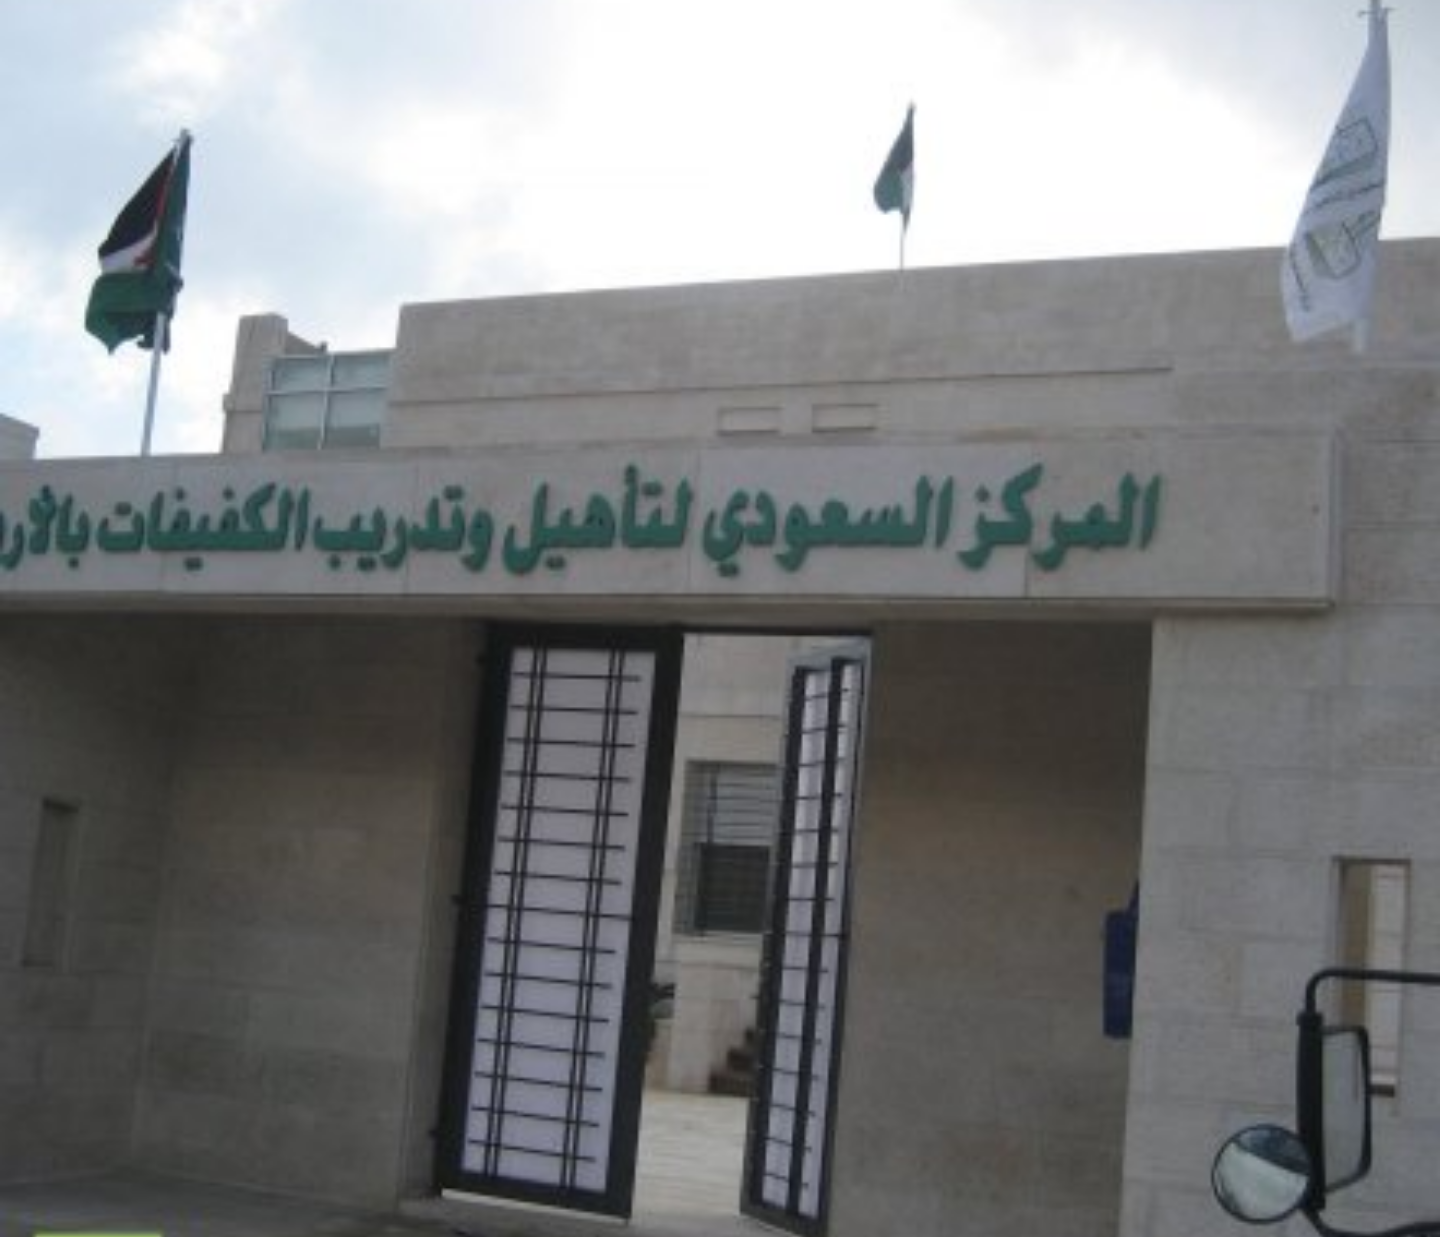 أهم محاور ورشة “الإعاقة البصرية في المفاهيم العصرية” بالمركز السعودي بالأردن